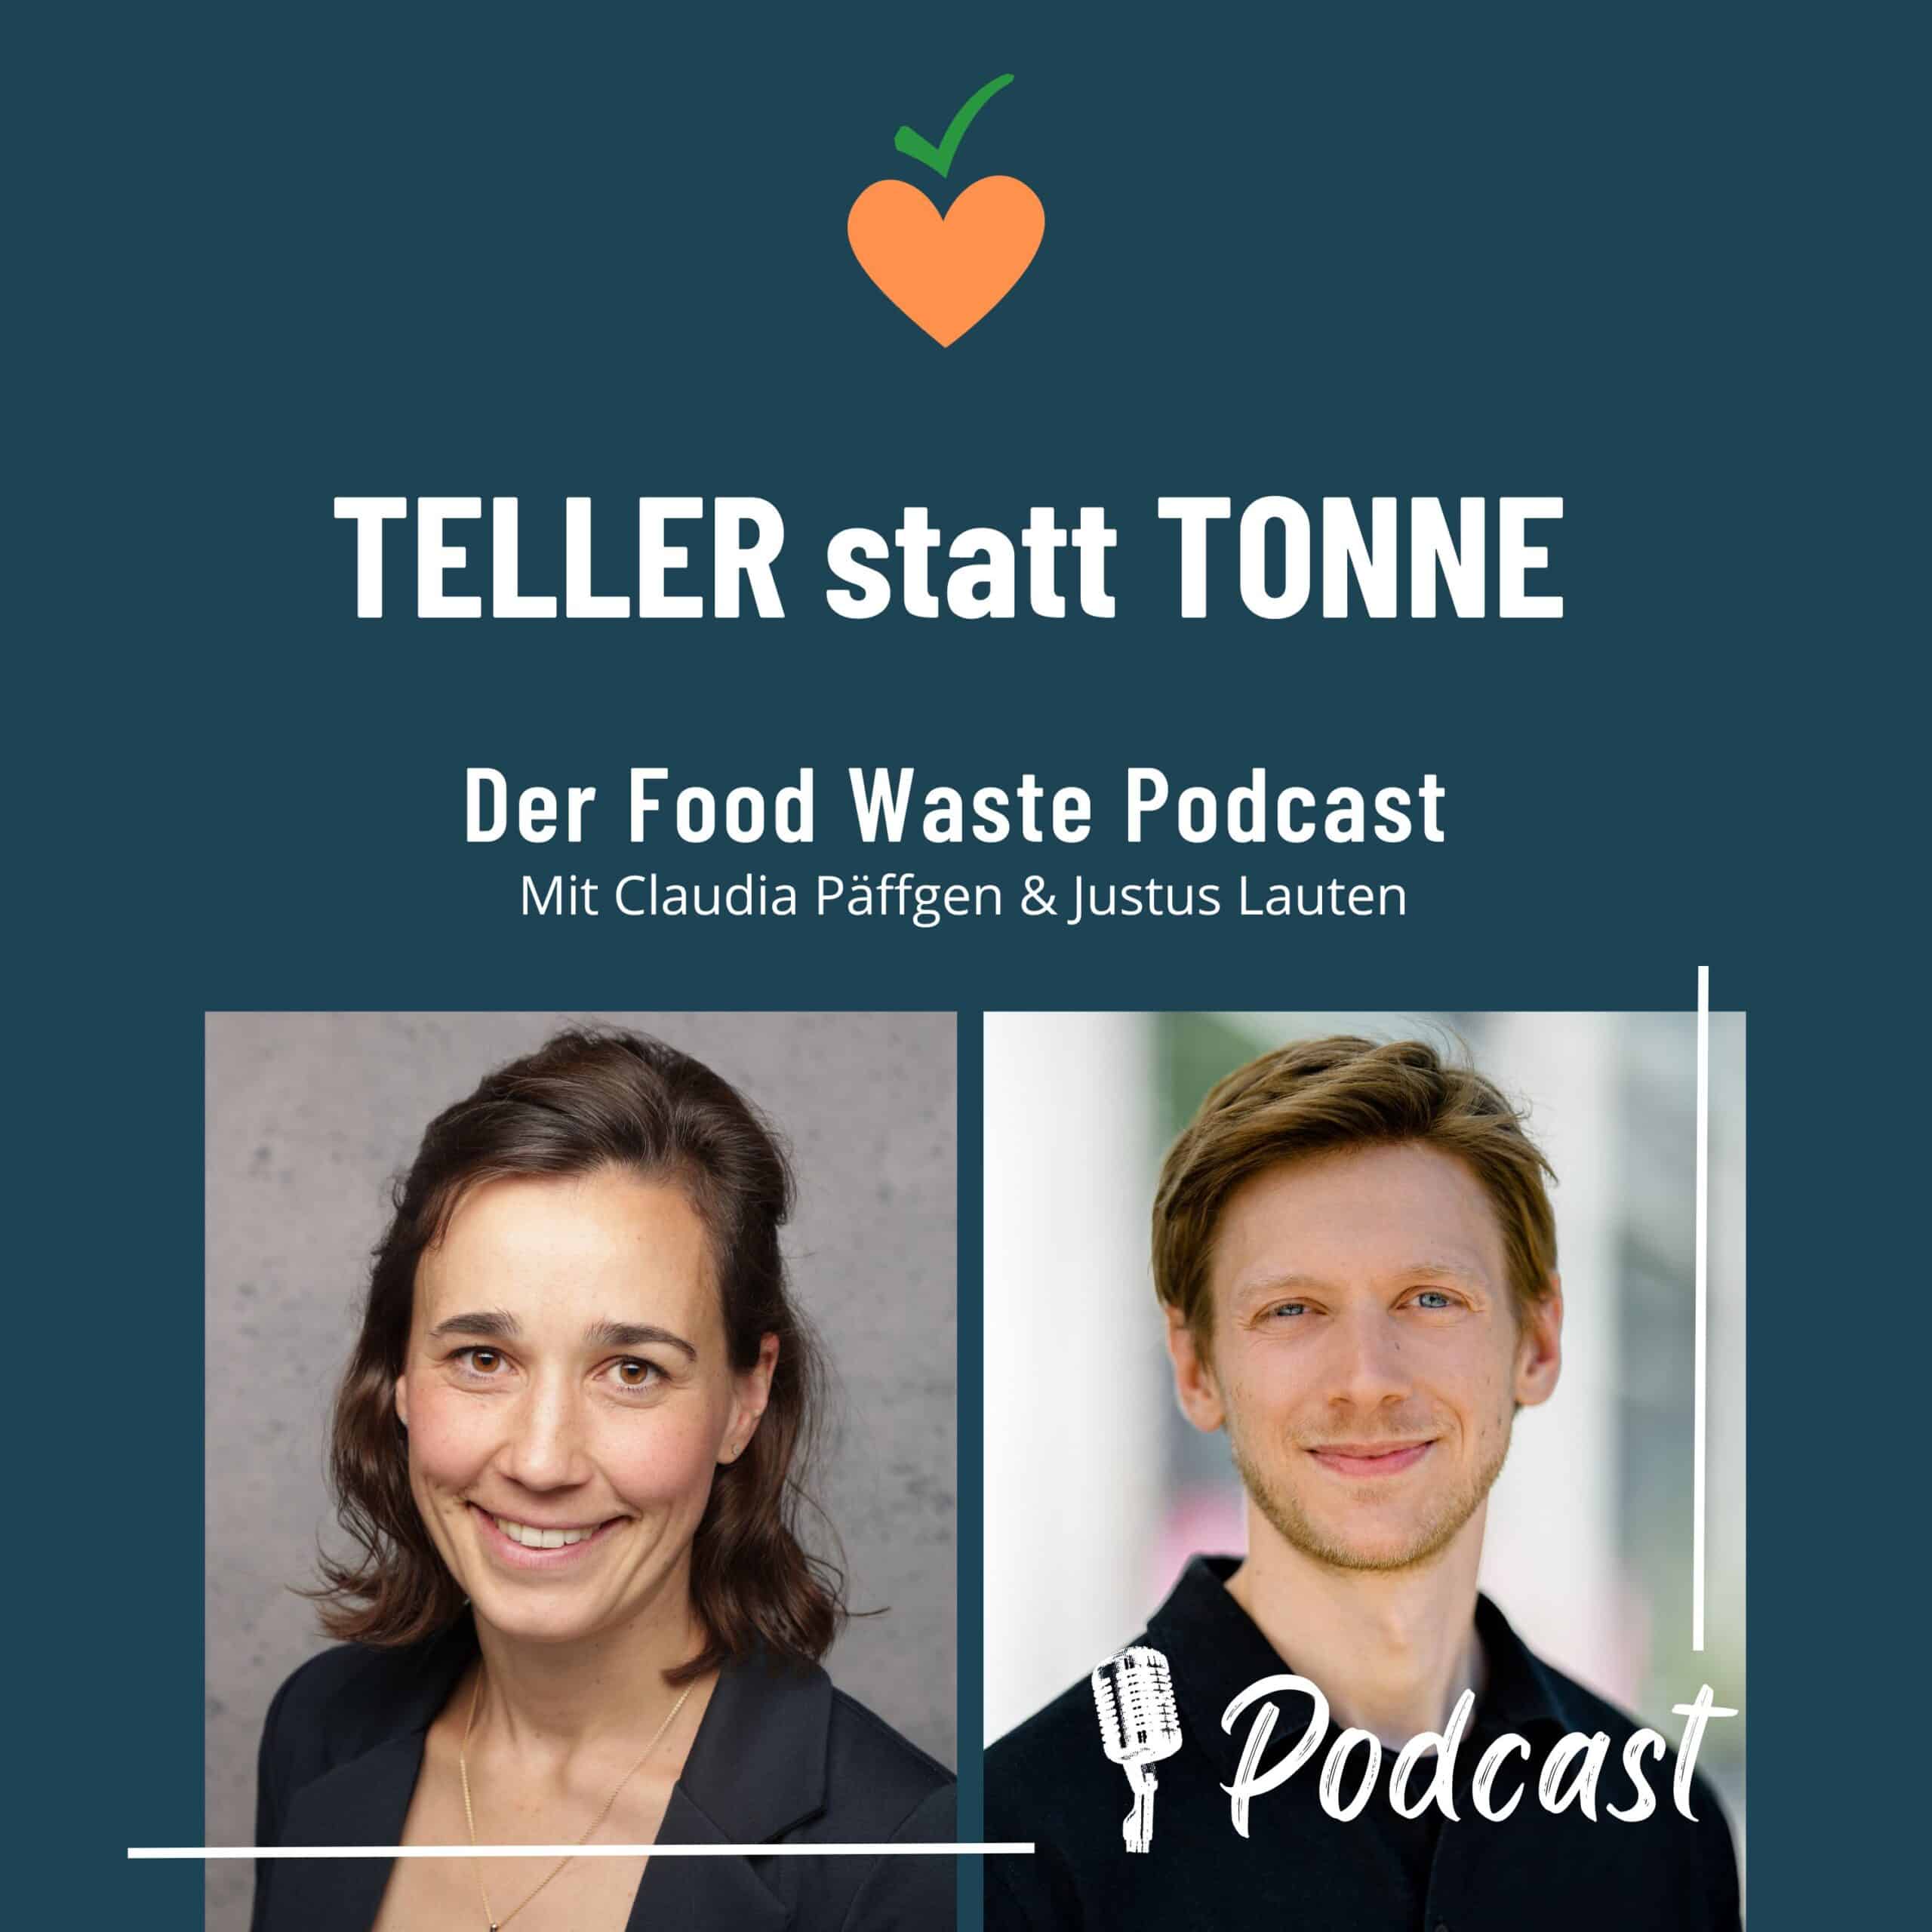 Featured image for “Wir starten mit unserem eigenen Food-Waste-Podcast!”